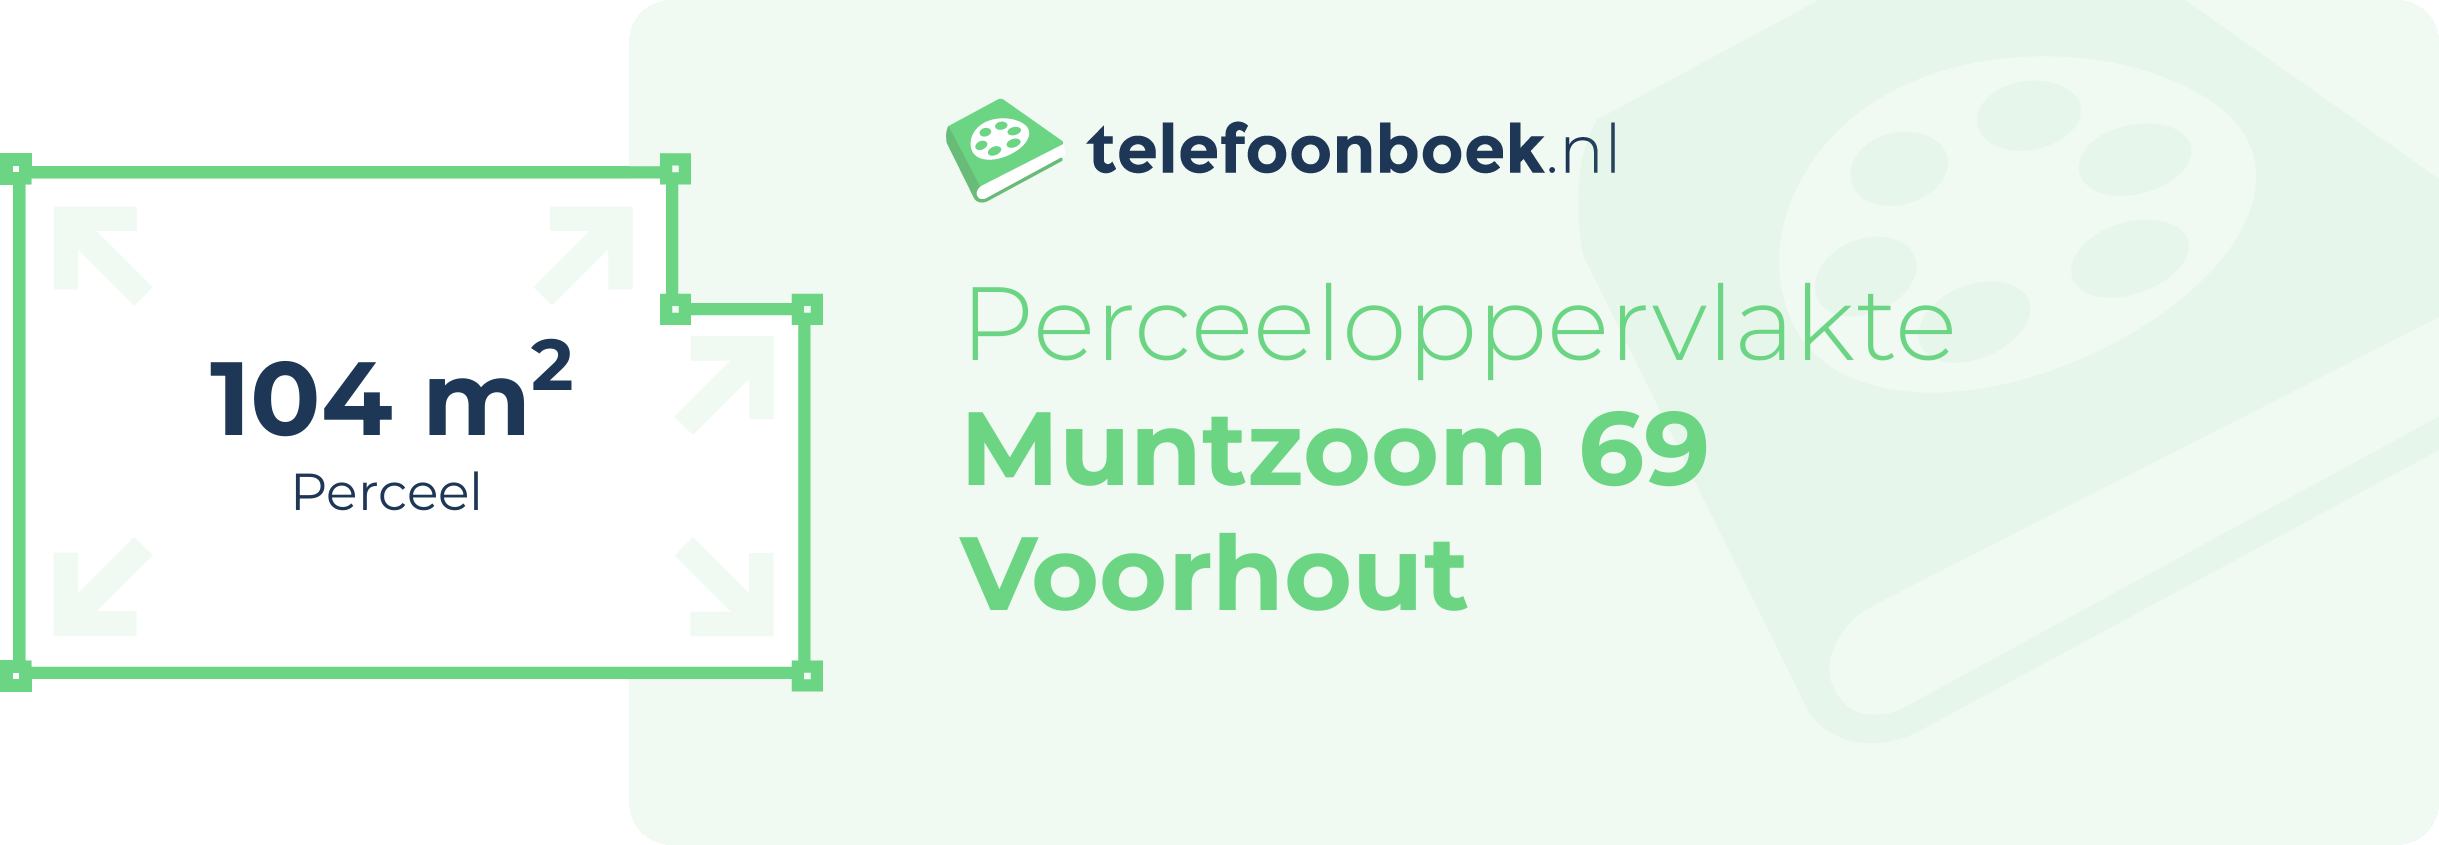 Perceeloppervlakte Muntzoom 69 Voorhout